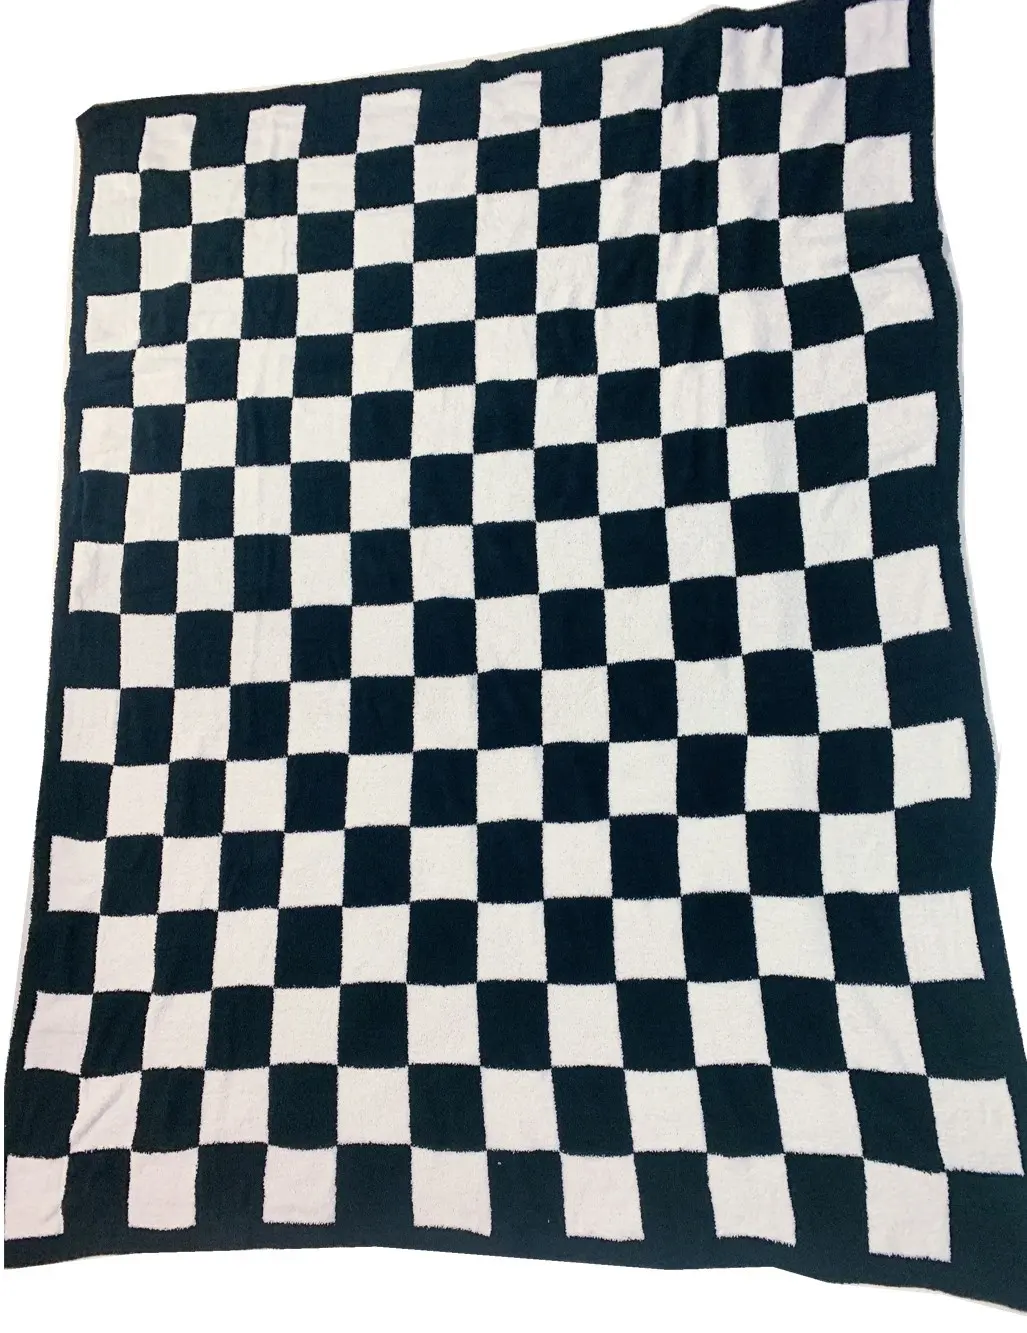 Garn gestrickte Decke Großhandel schwarz und weiß kariert dick schwer weich weich flauschig Feder wurf für Erwachsene Luxus 100% Polyester